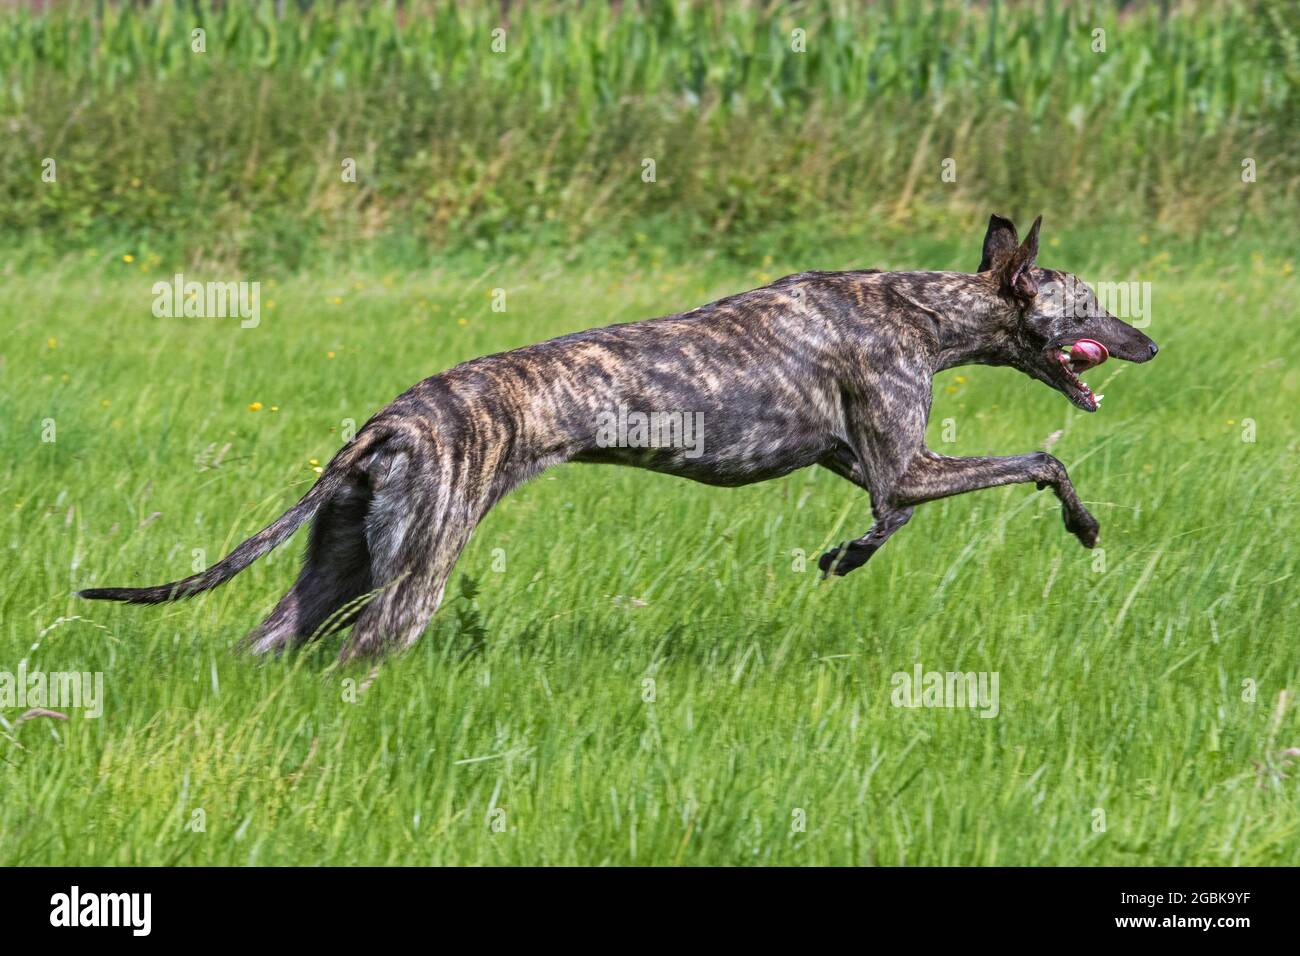 Galgo Español à revêtement brut brindiqué / galgo espagnol barcino / atigrado Spatithound espagnol, chien race des soupirs courant dans le champ Banque D'Images